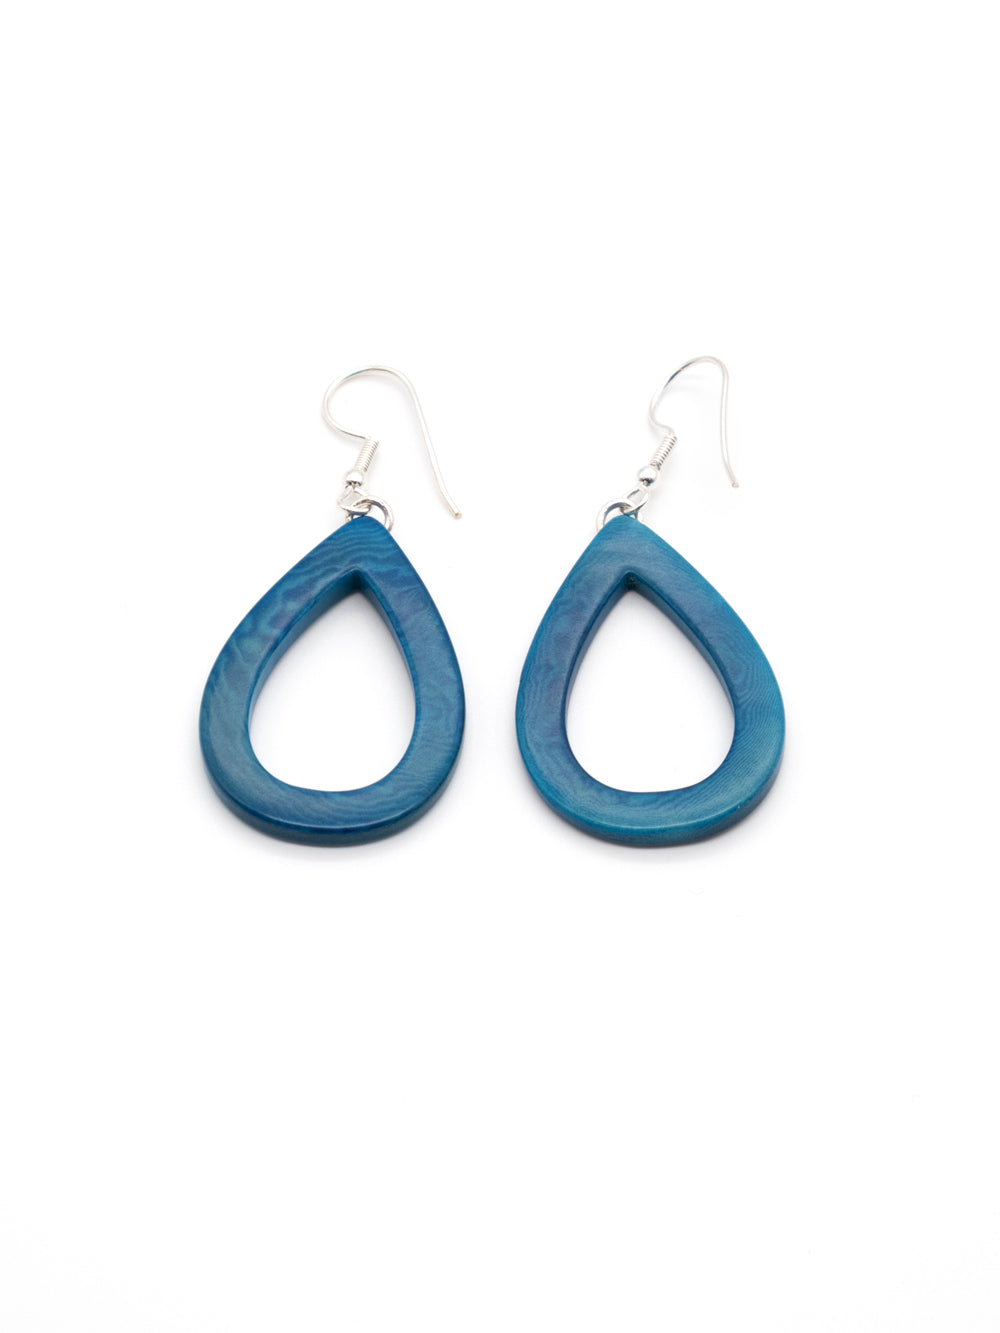 Ohrringe Samyret blau - La Tagua Nuss silber